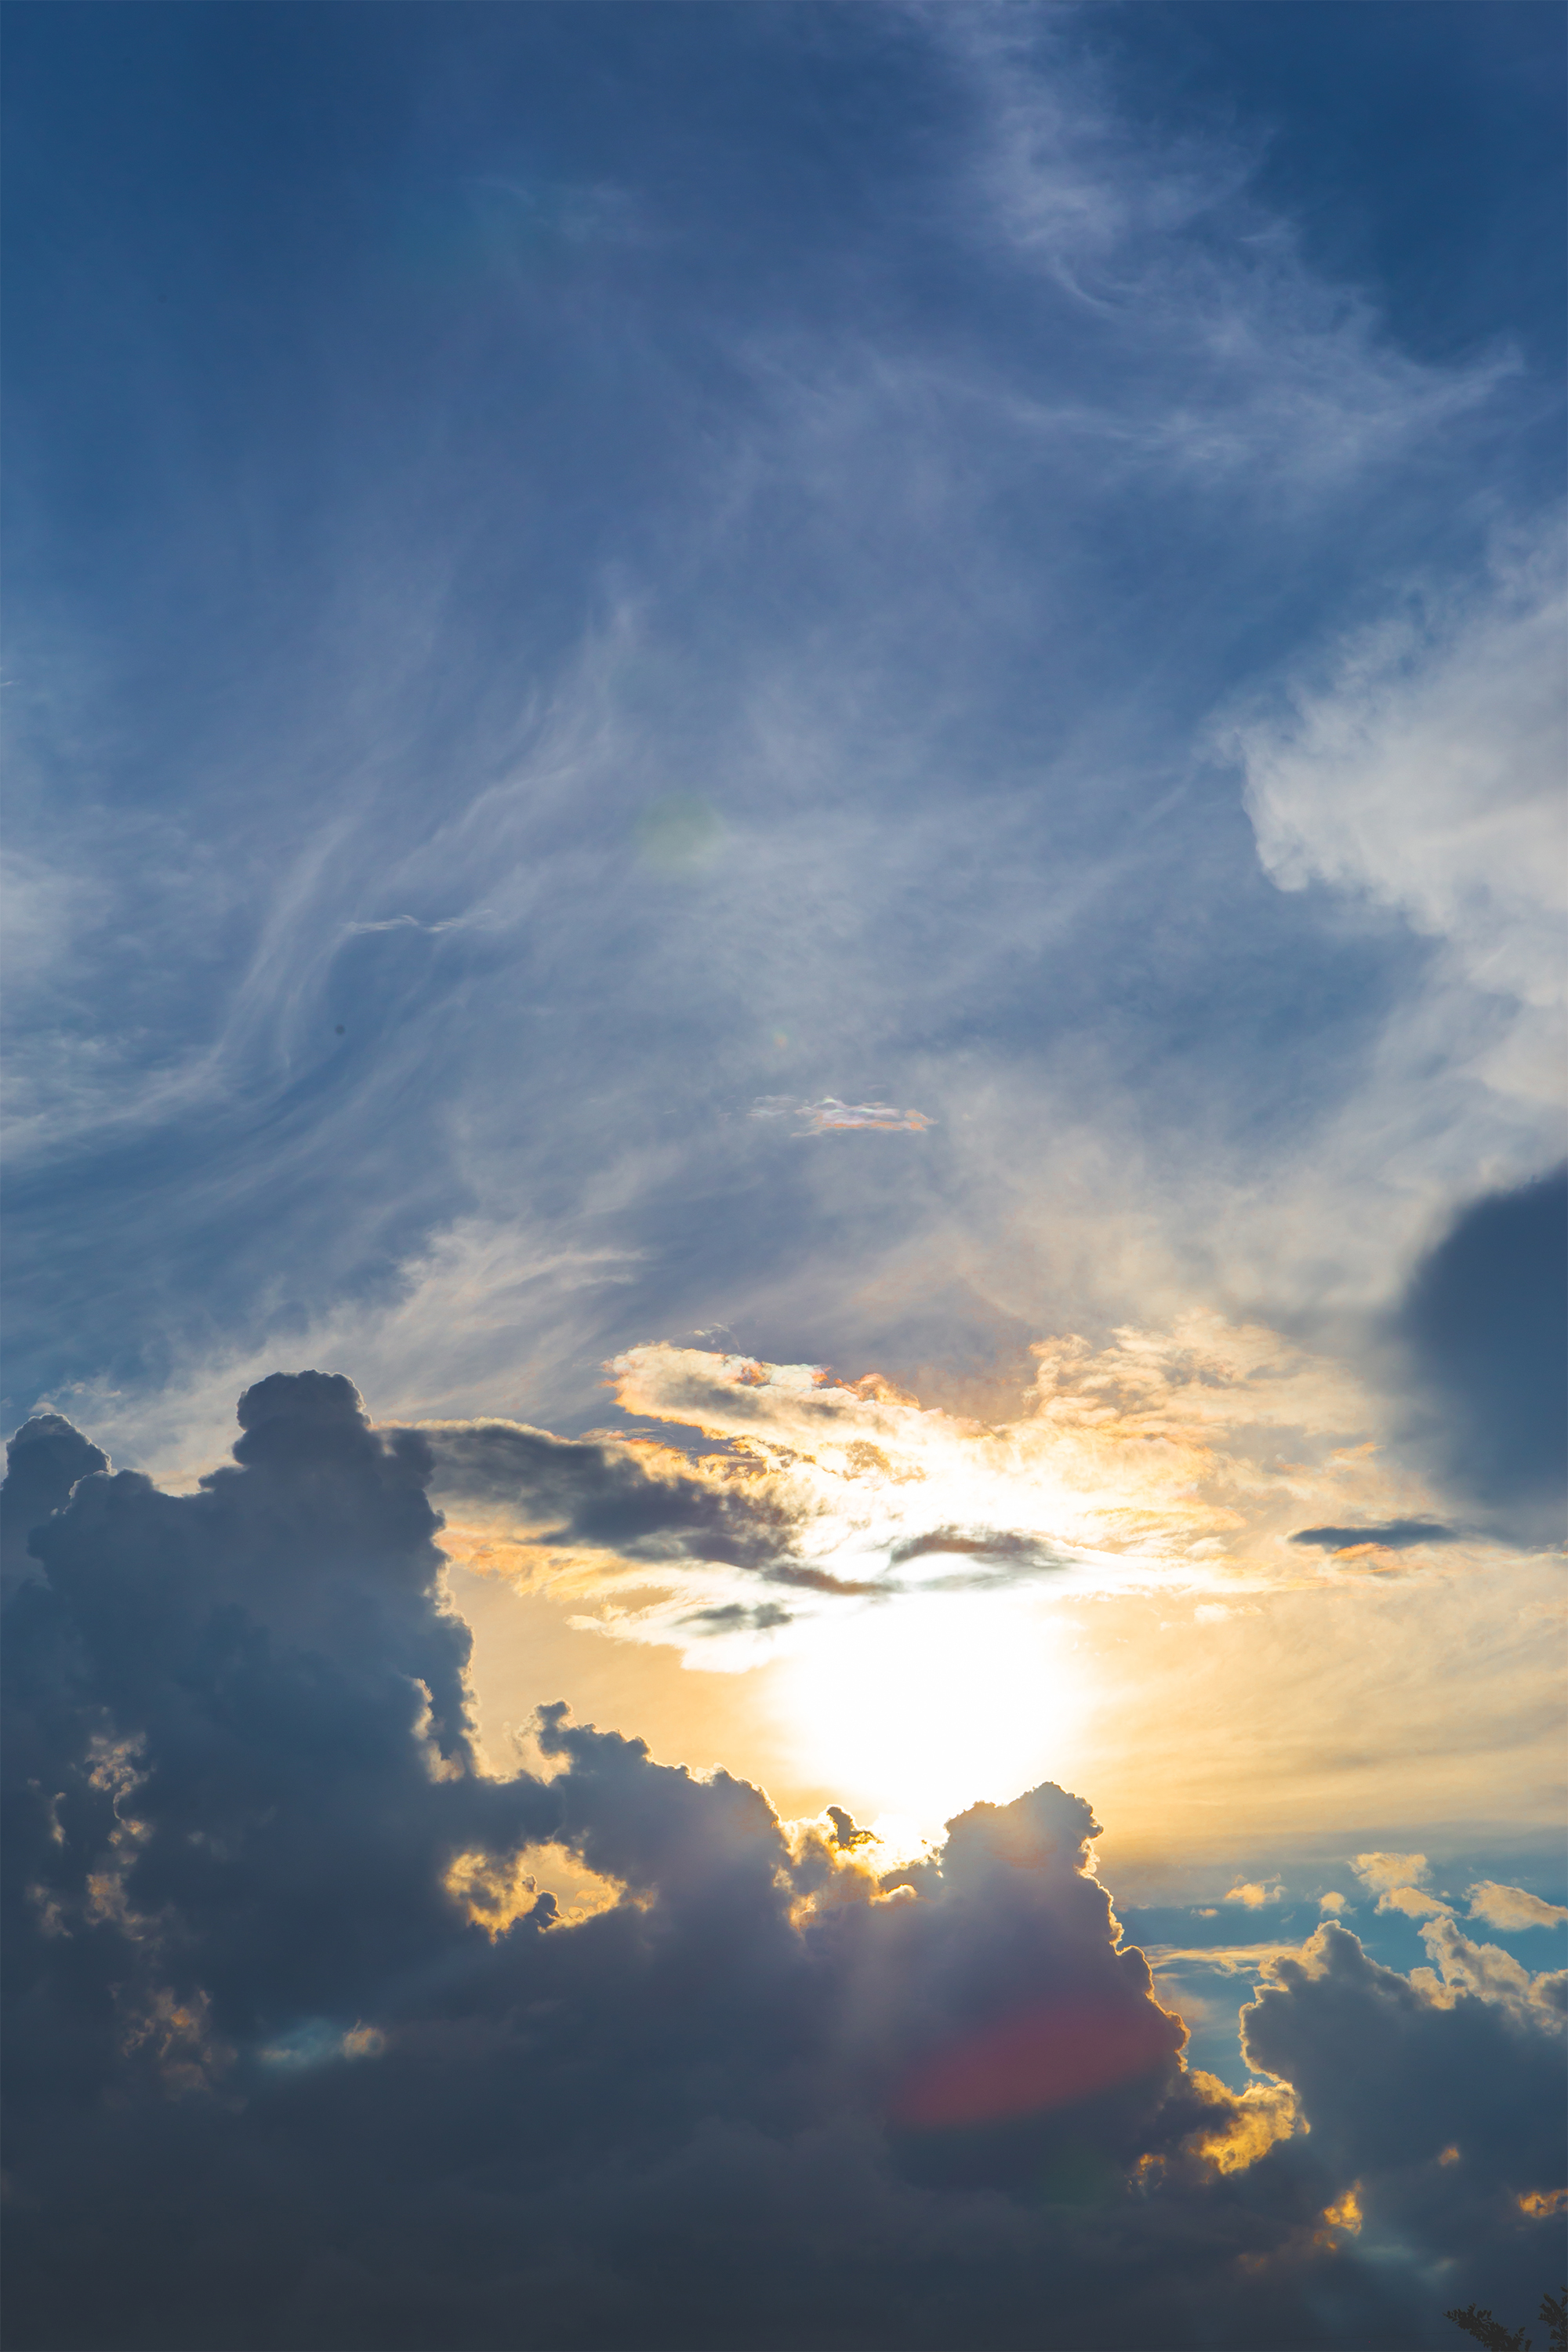 ダイナミックな雲と太陽02 無料の高画質フリー写真素材 イメージズラボ